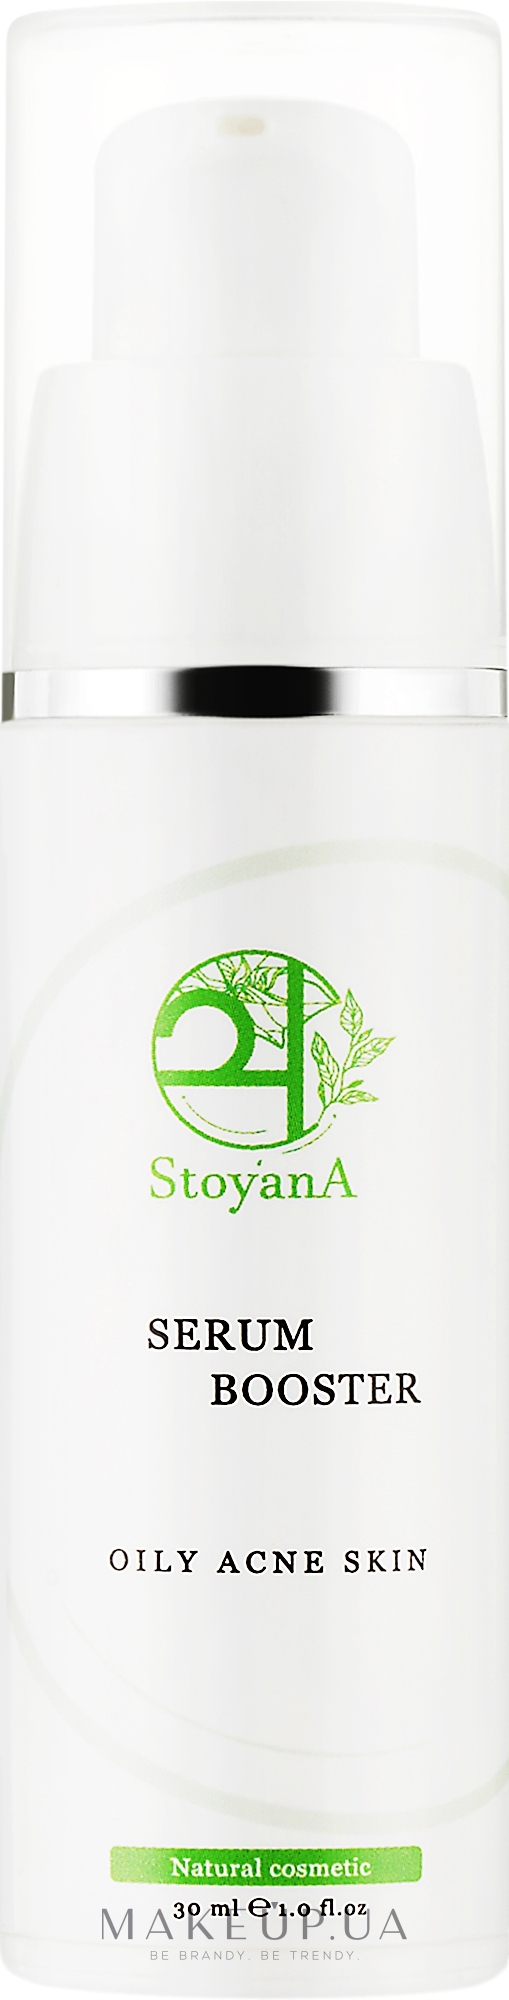 Сыворотка-бустер с активом BixActiv для лица - StoyanA Booster Oily Acne Skin — фото 30ml